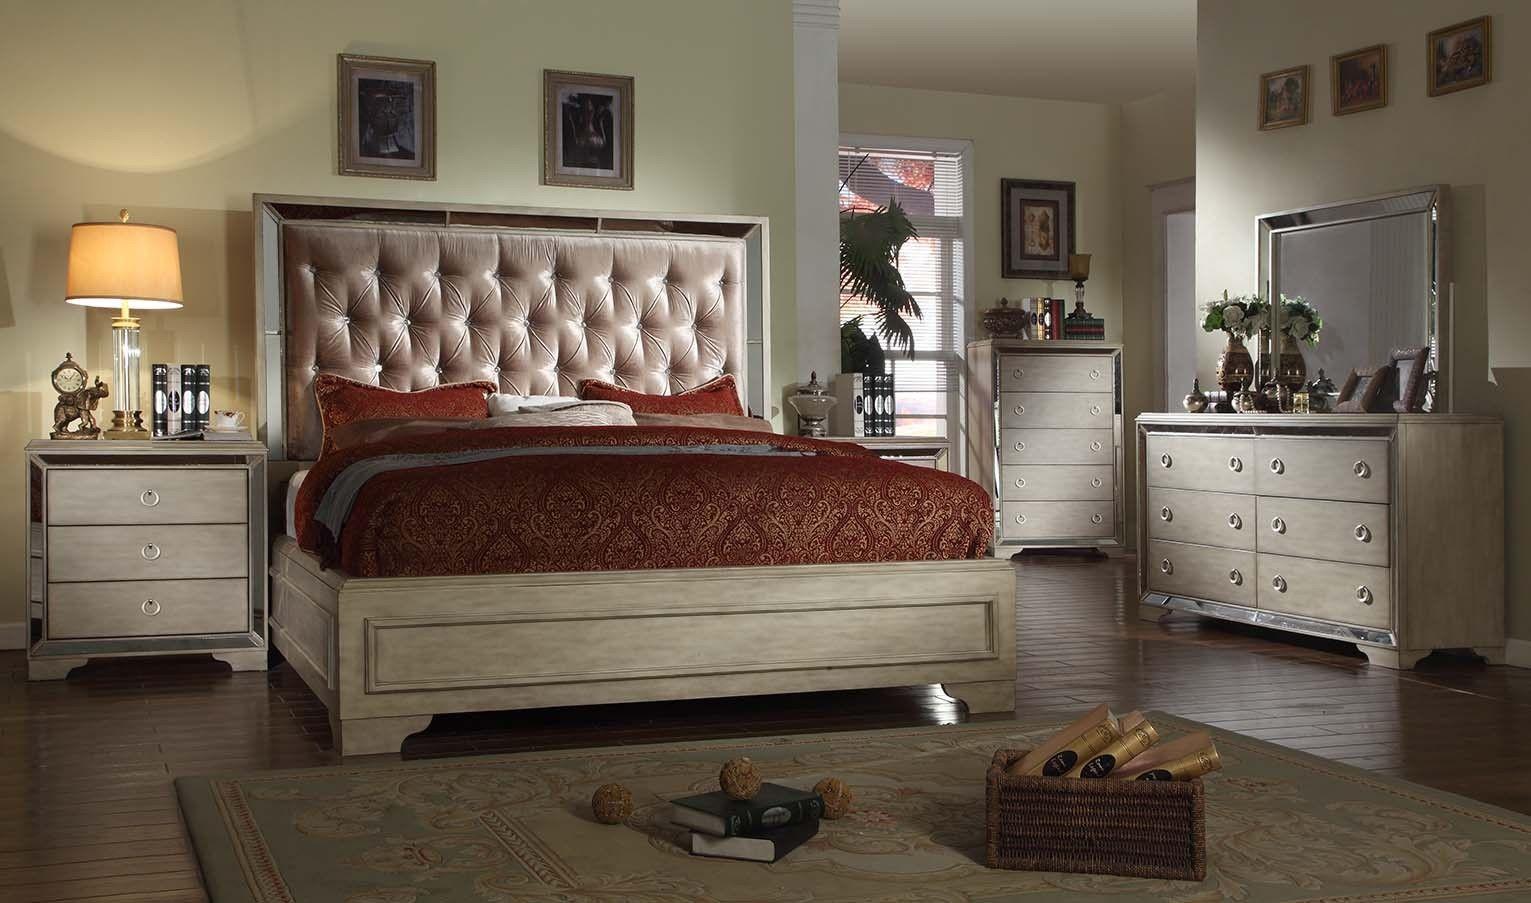 McFerran Furniture Imperial B9805 Platform Bedroom Set